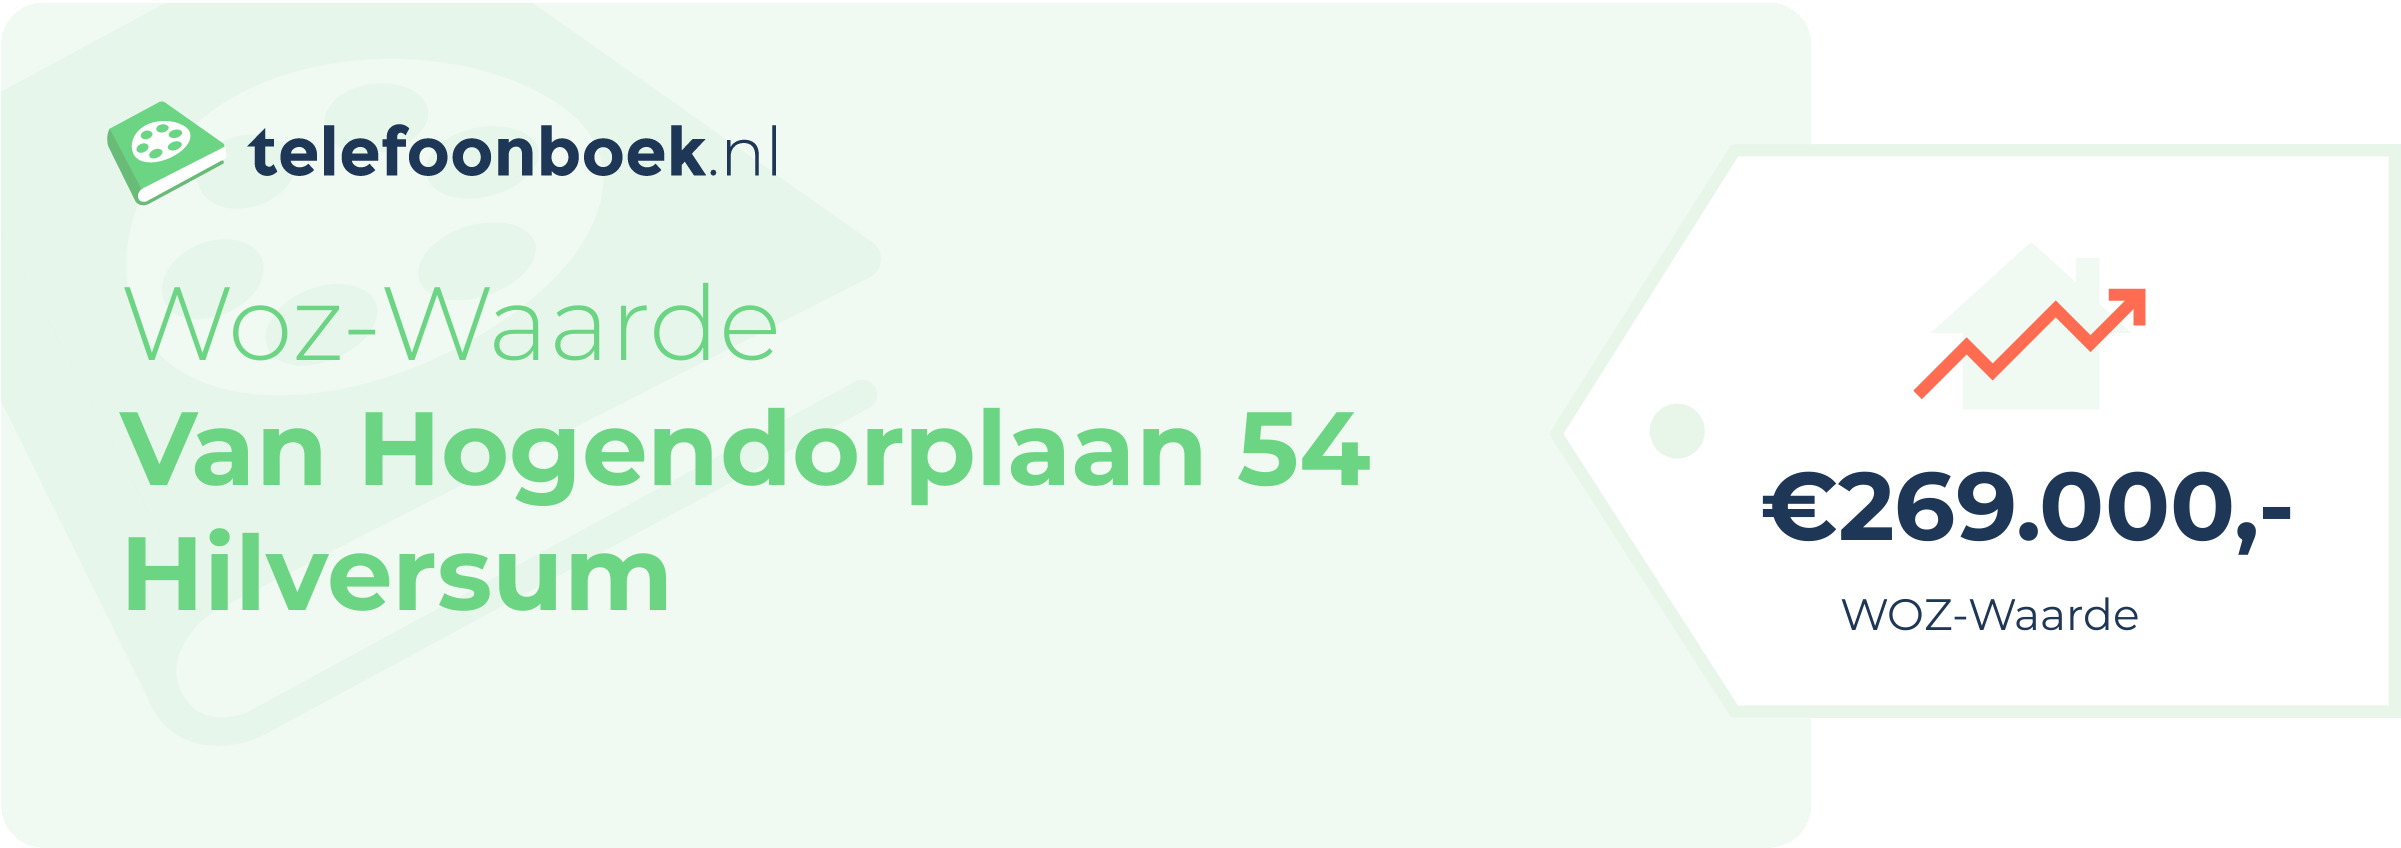 WOZ-waarde Van Hogendorplaan 54 Hilversum